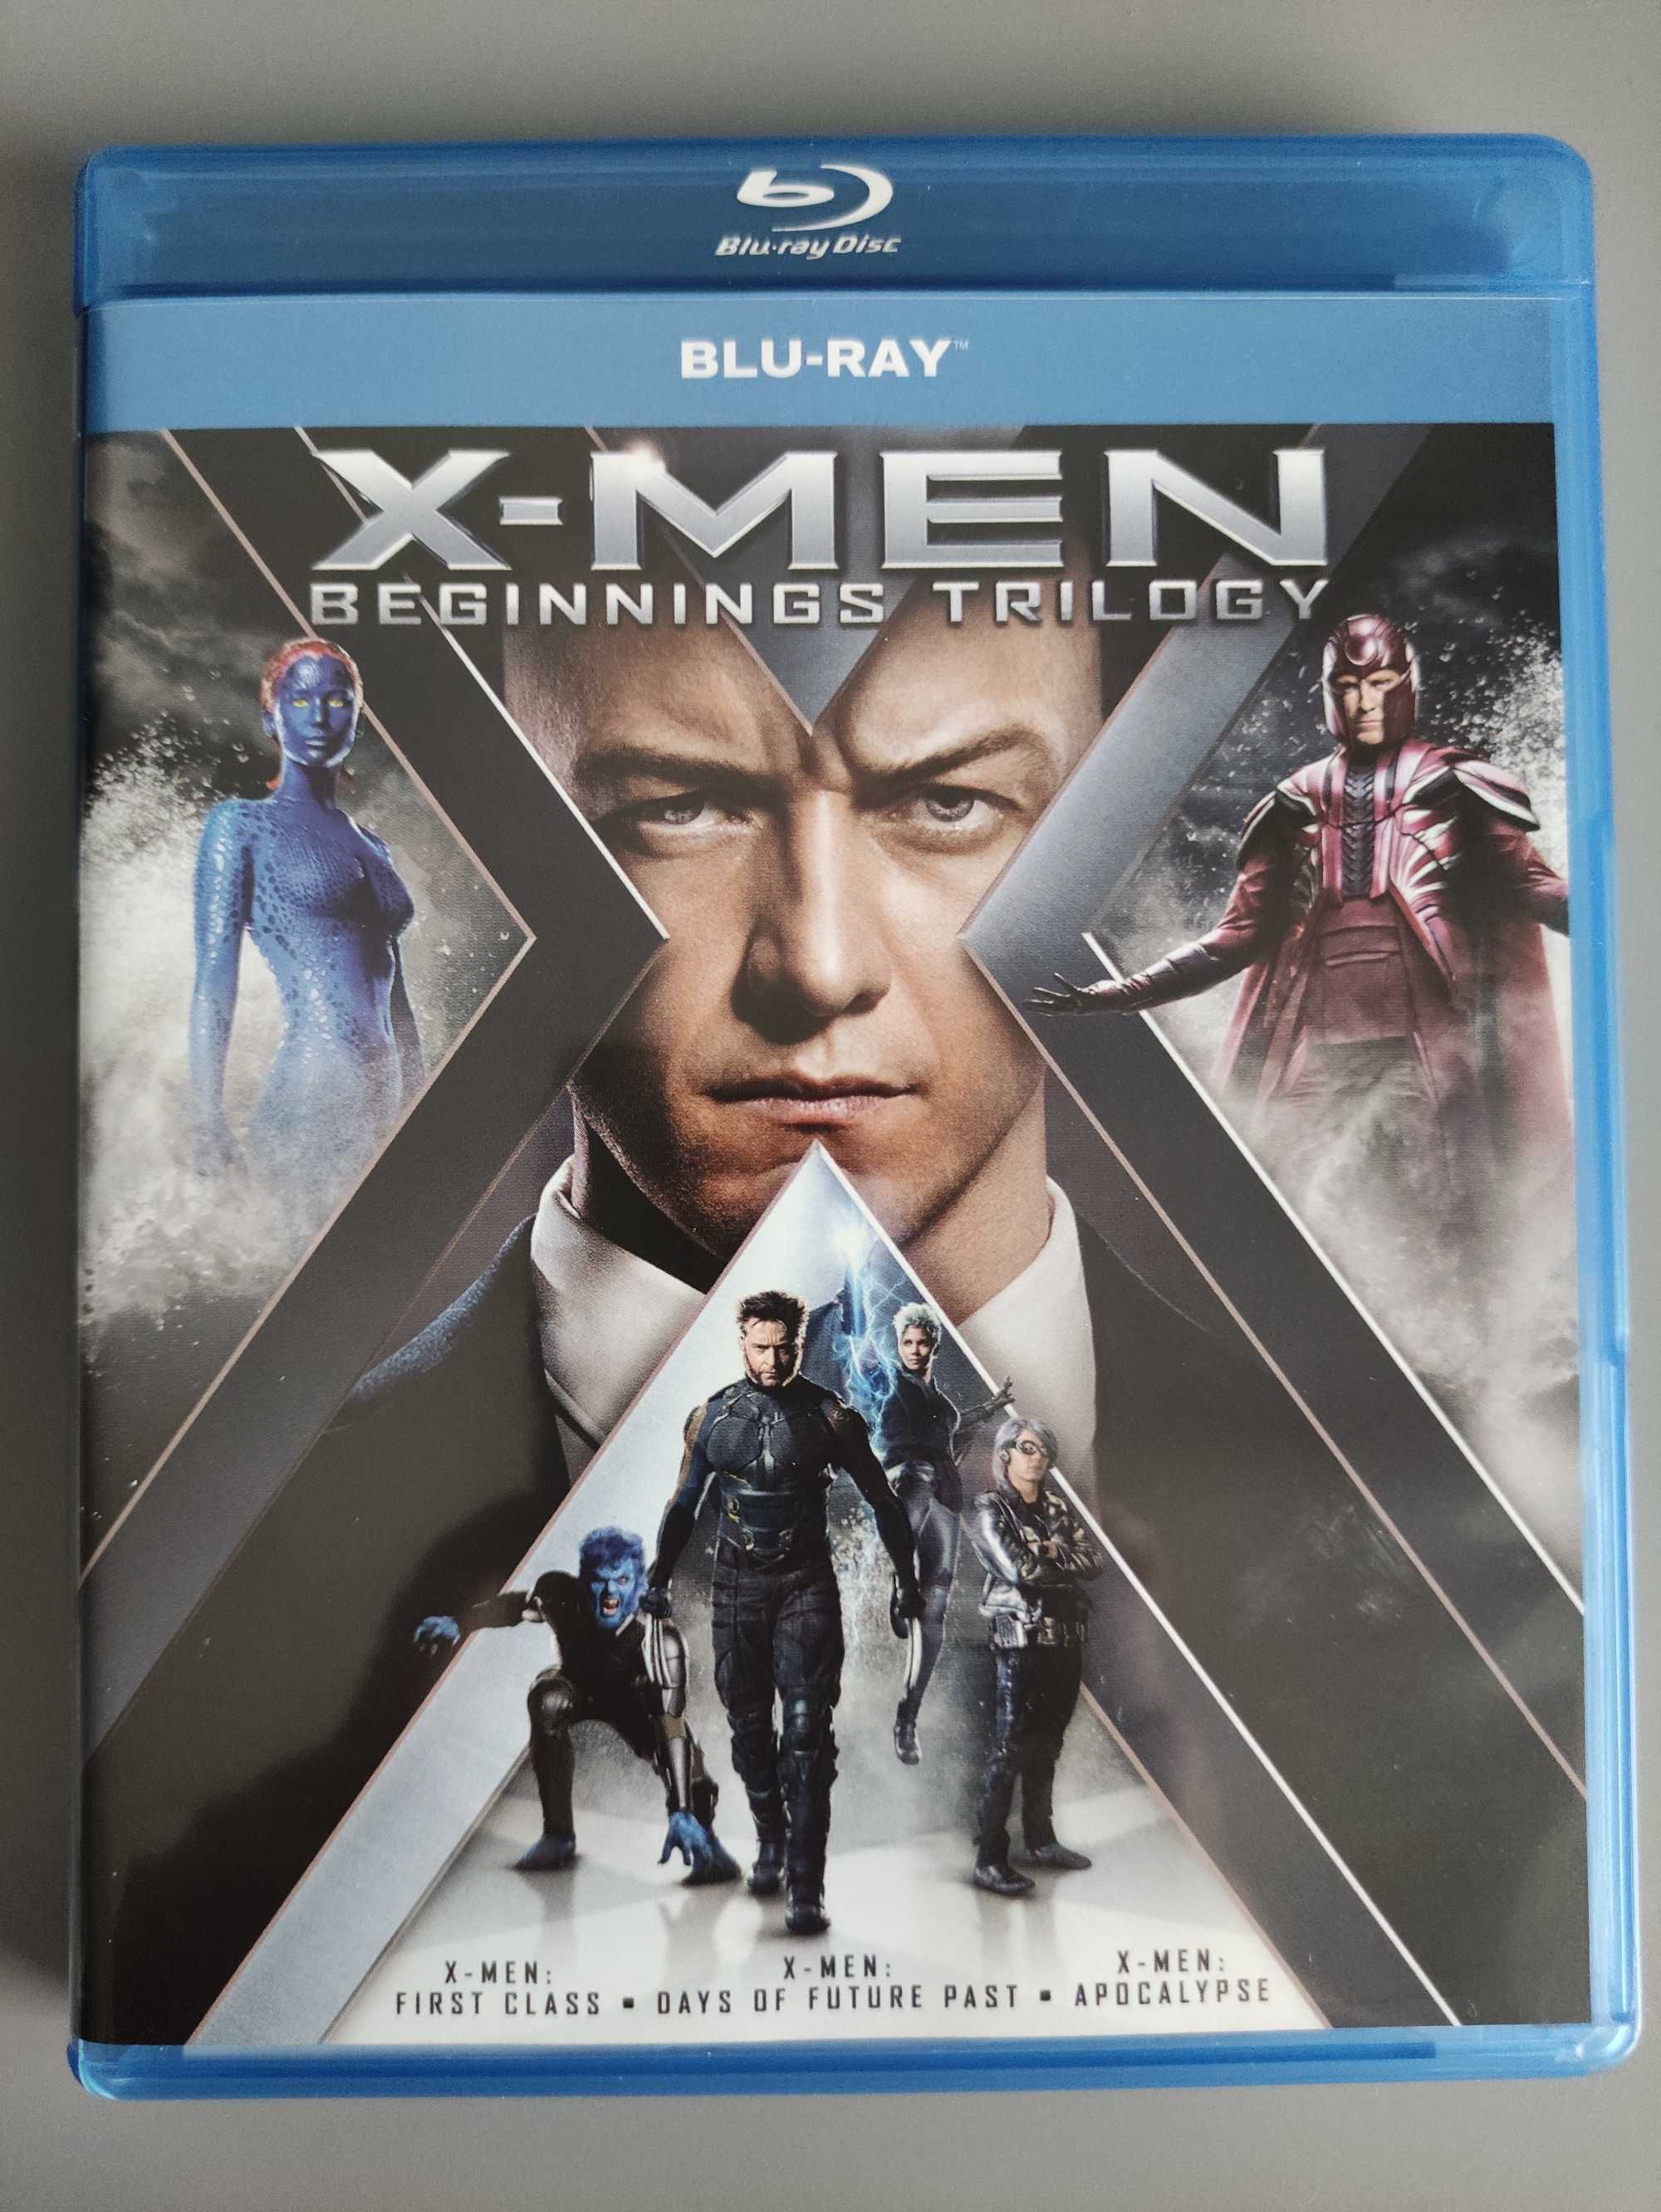 Filmy Blu-ray X-men First Class, Days of Future Past oraz Apocalypse